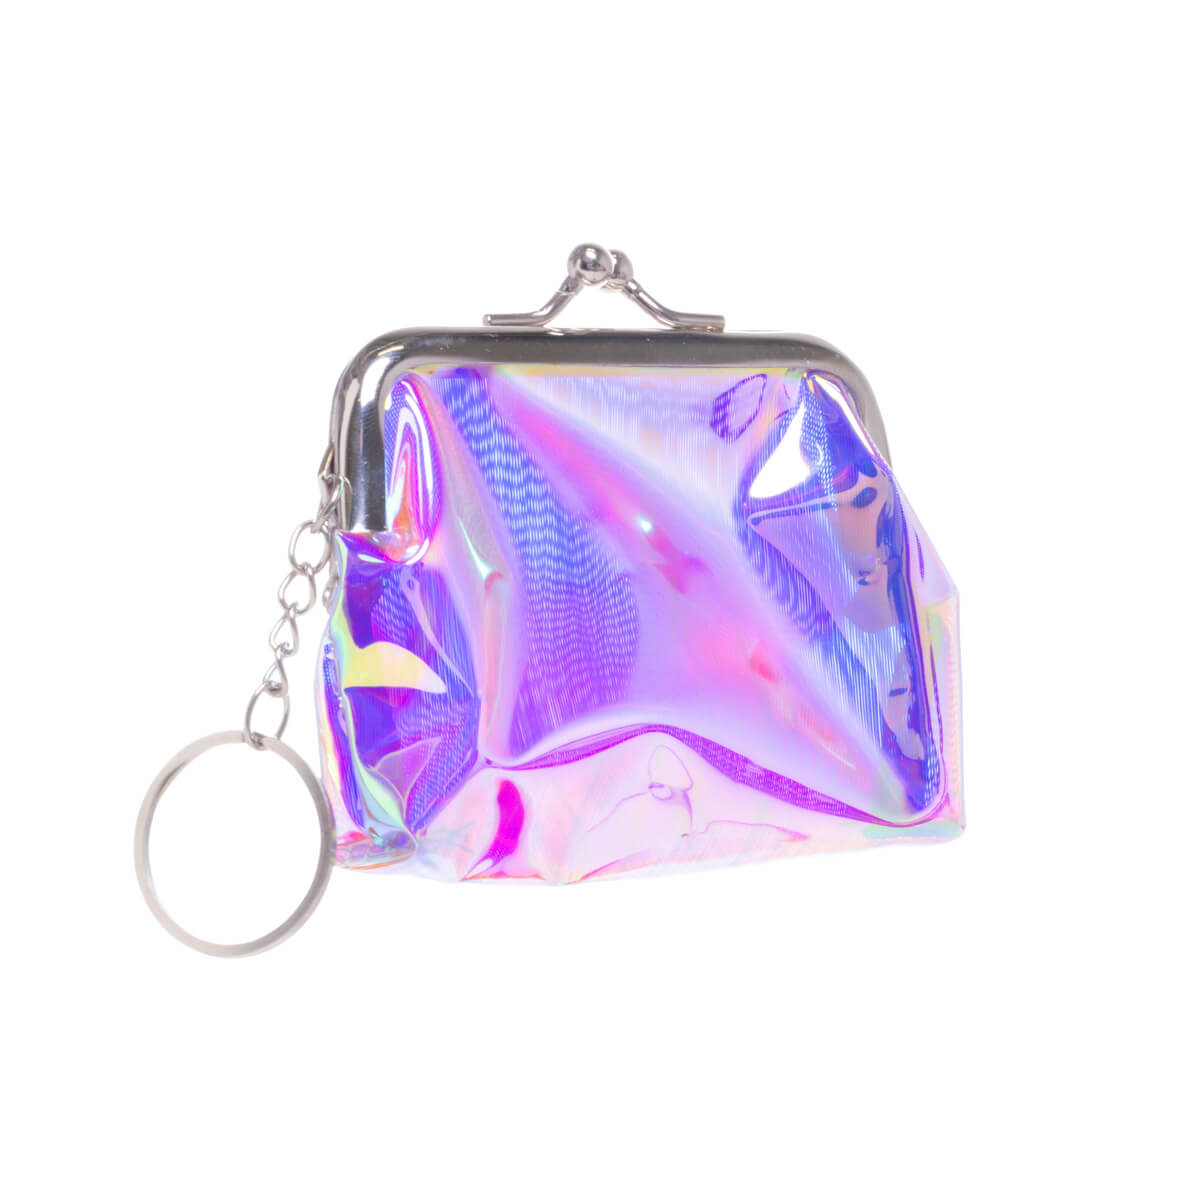 Sparkling purse keyring